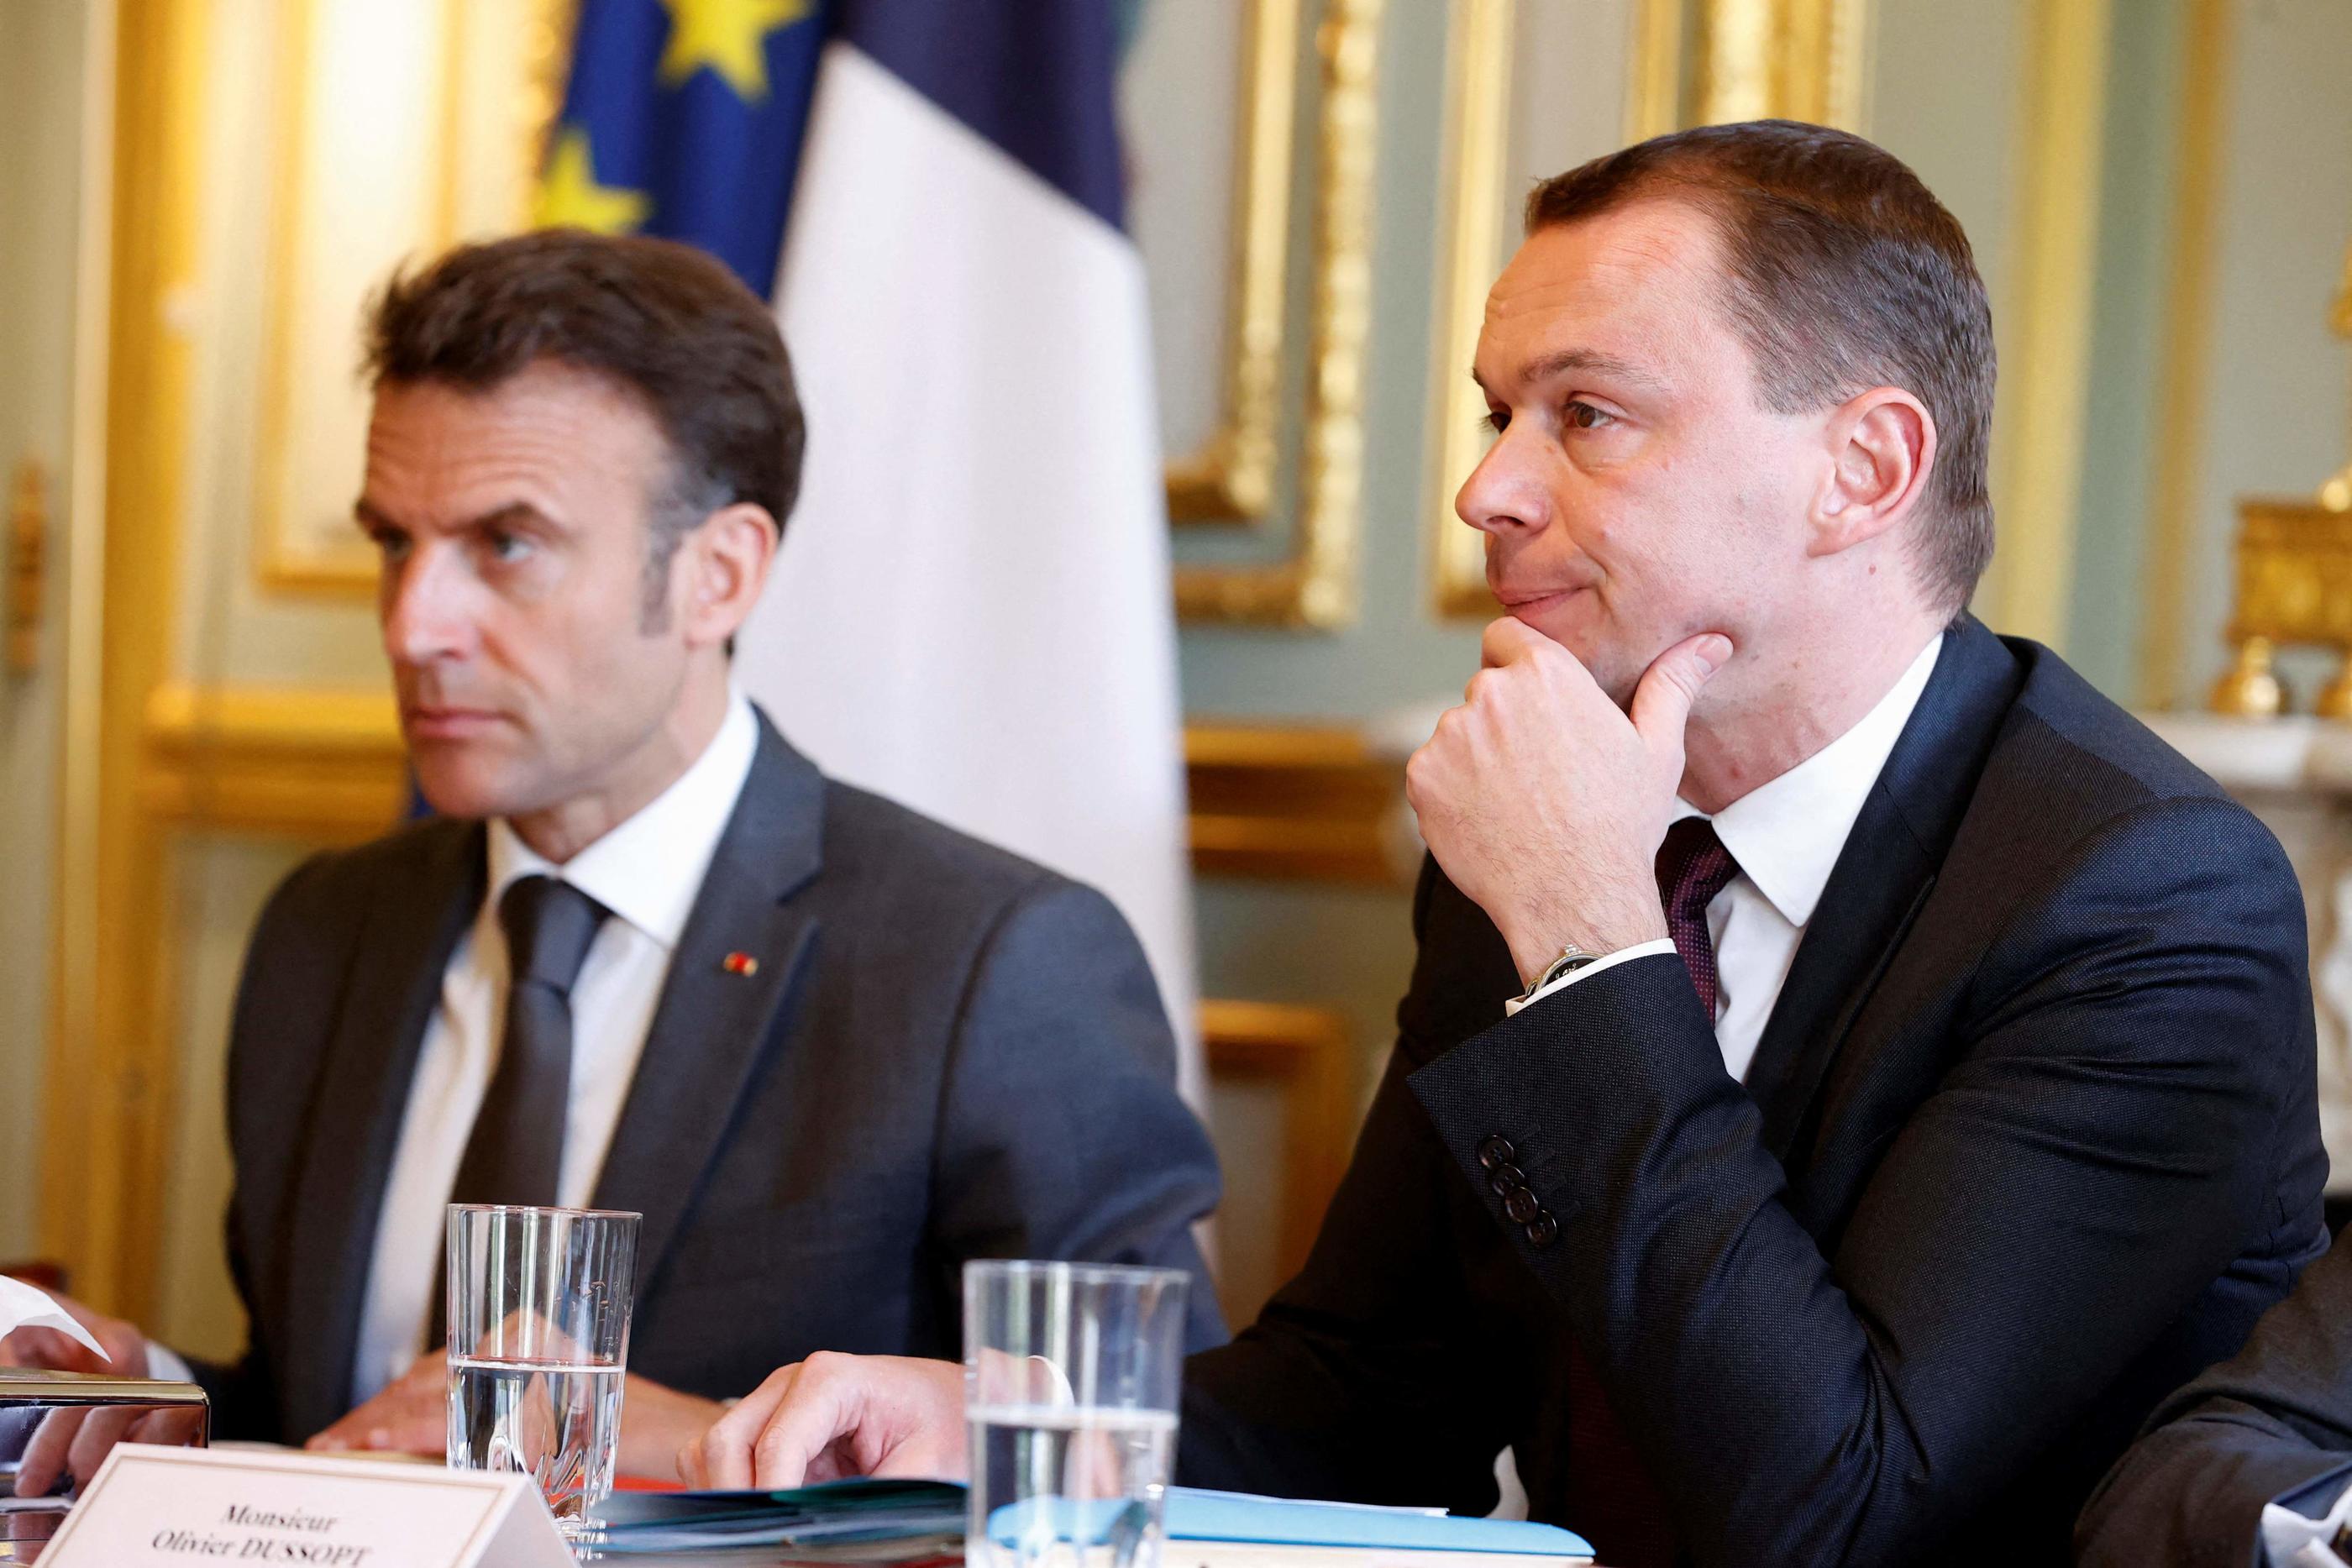 Lors d'un déplacement à Chartres, le ministre du Travail, Olivier Dussopt a annoncé que les premiers décrets de la réforme des retraites étaient « quasiment prêts techniquement ». AFP